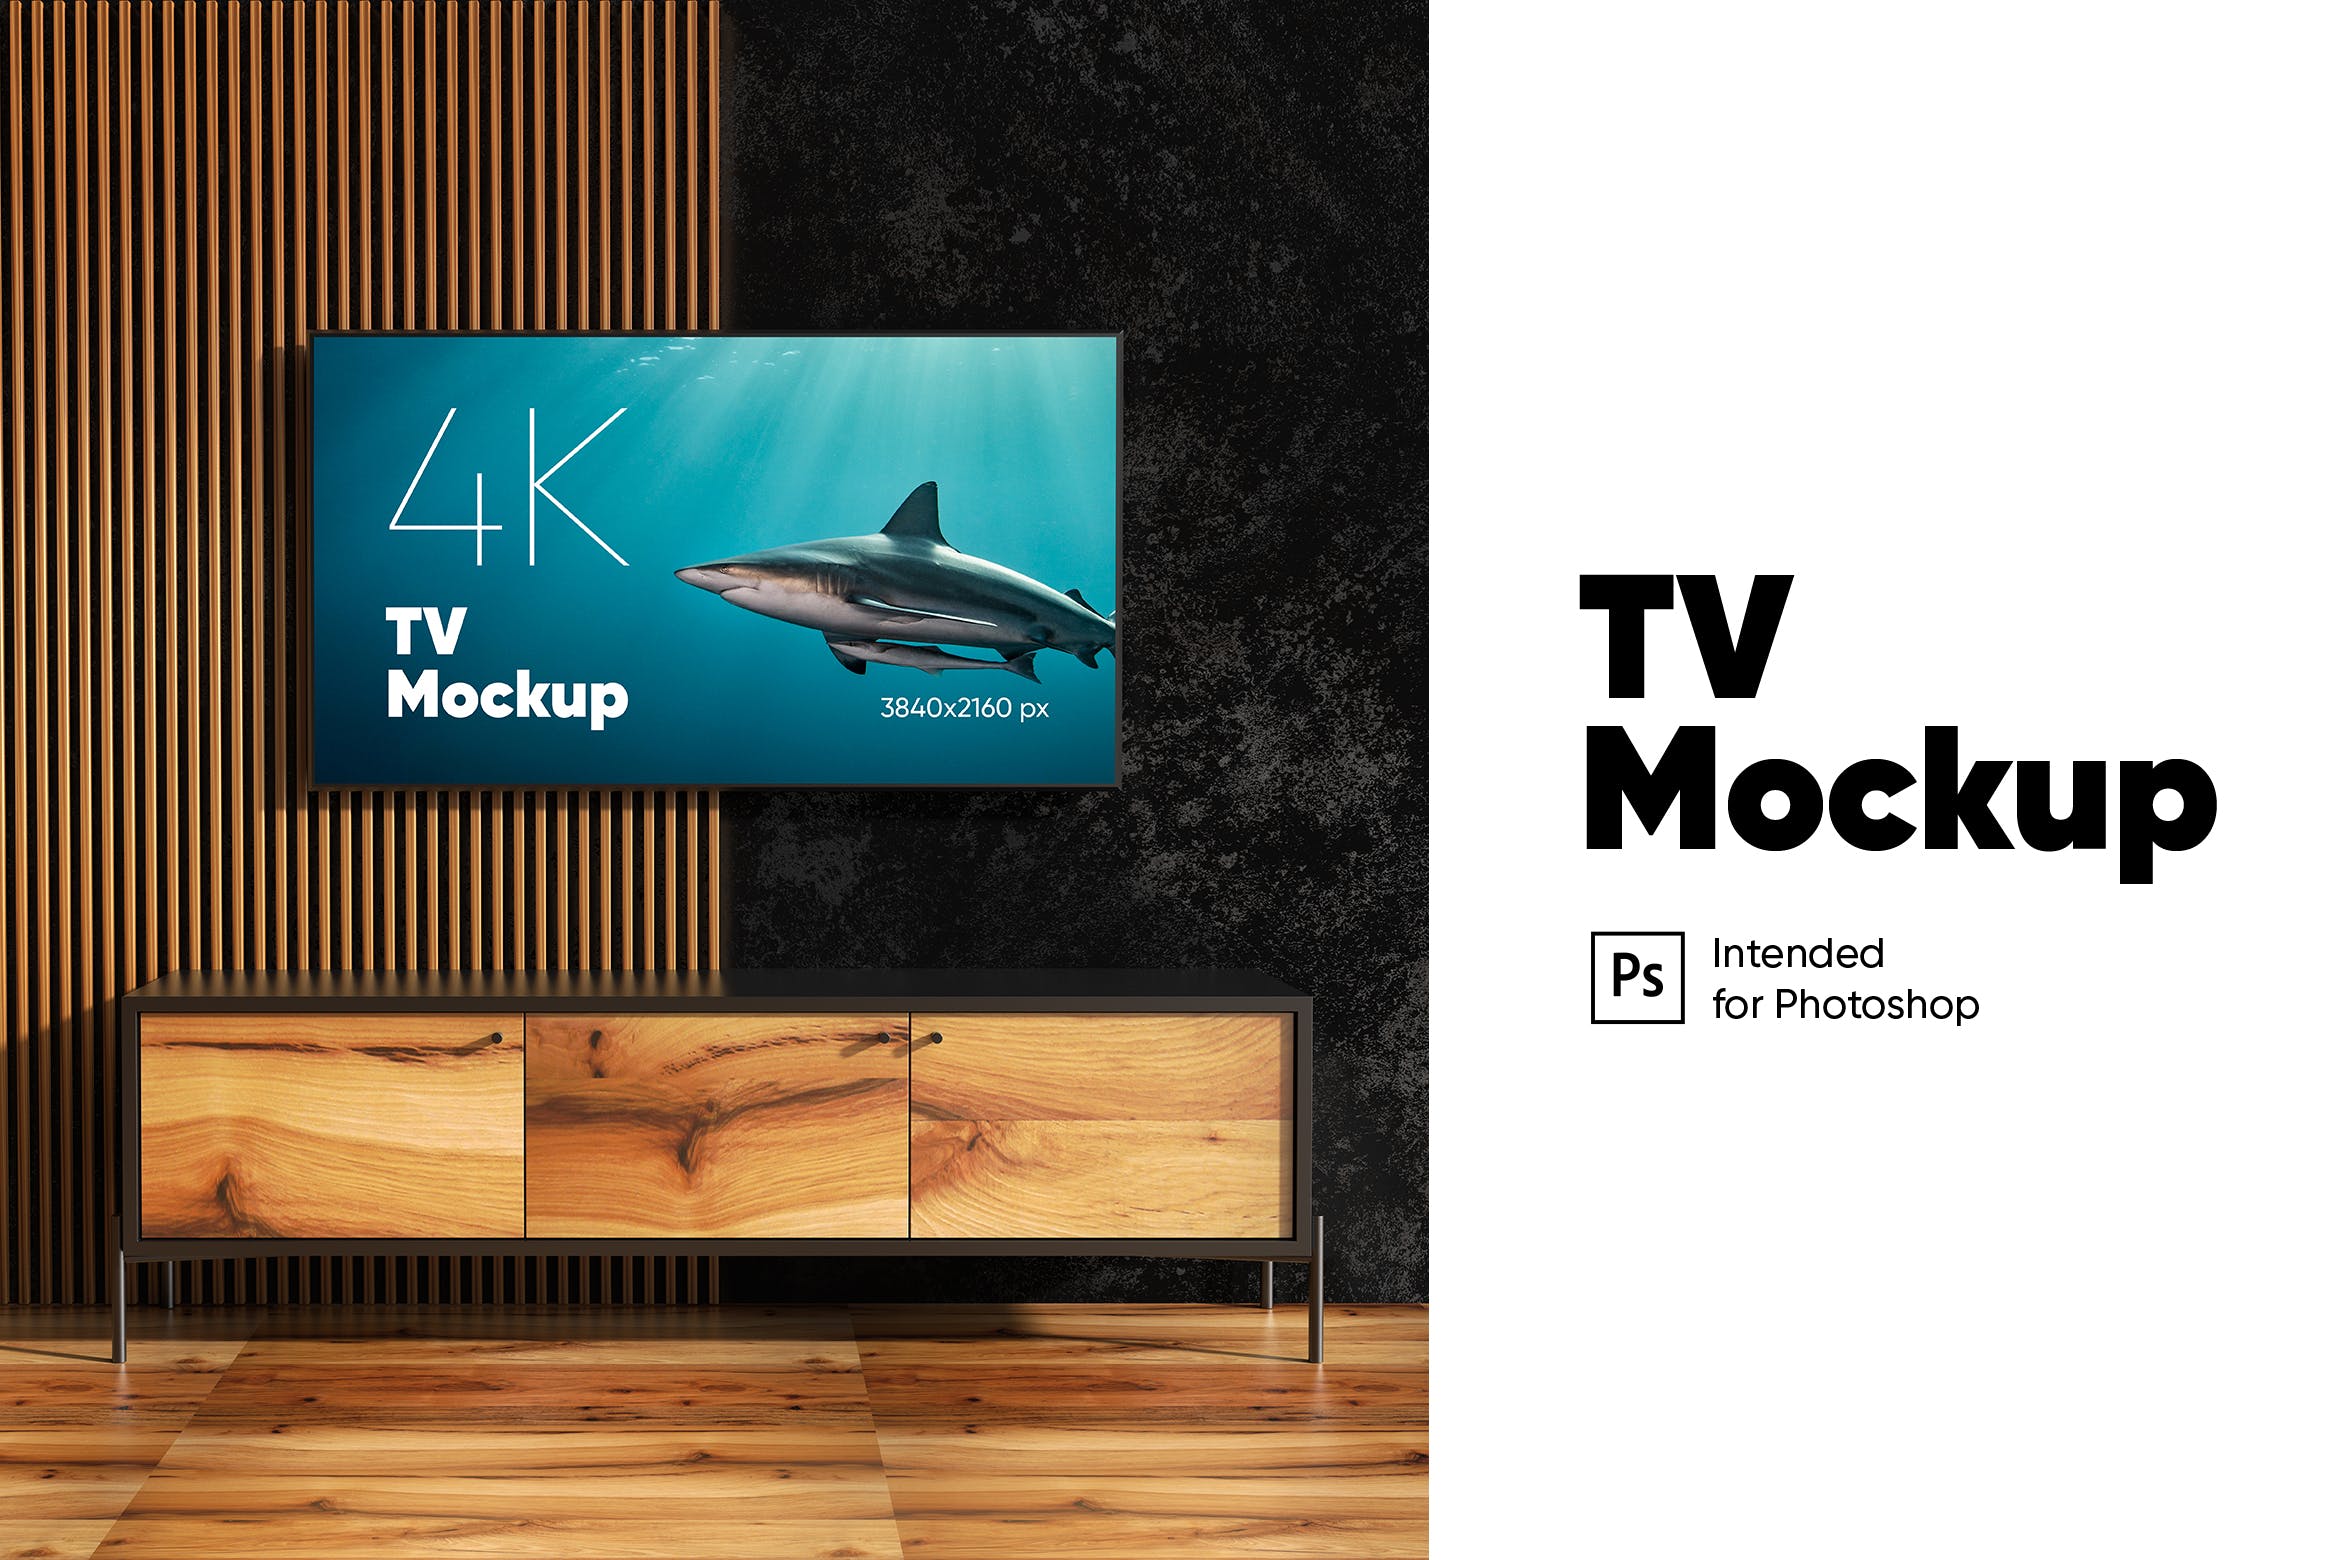 壁挂电视屏幕预览样机模板 TV Mockup设计素材模板